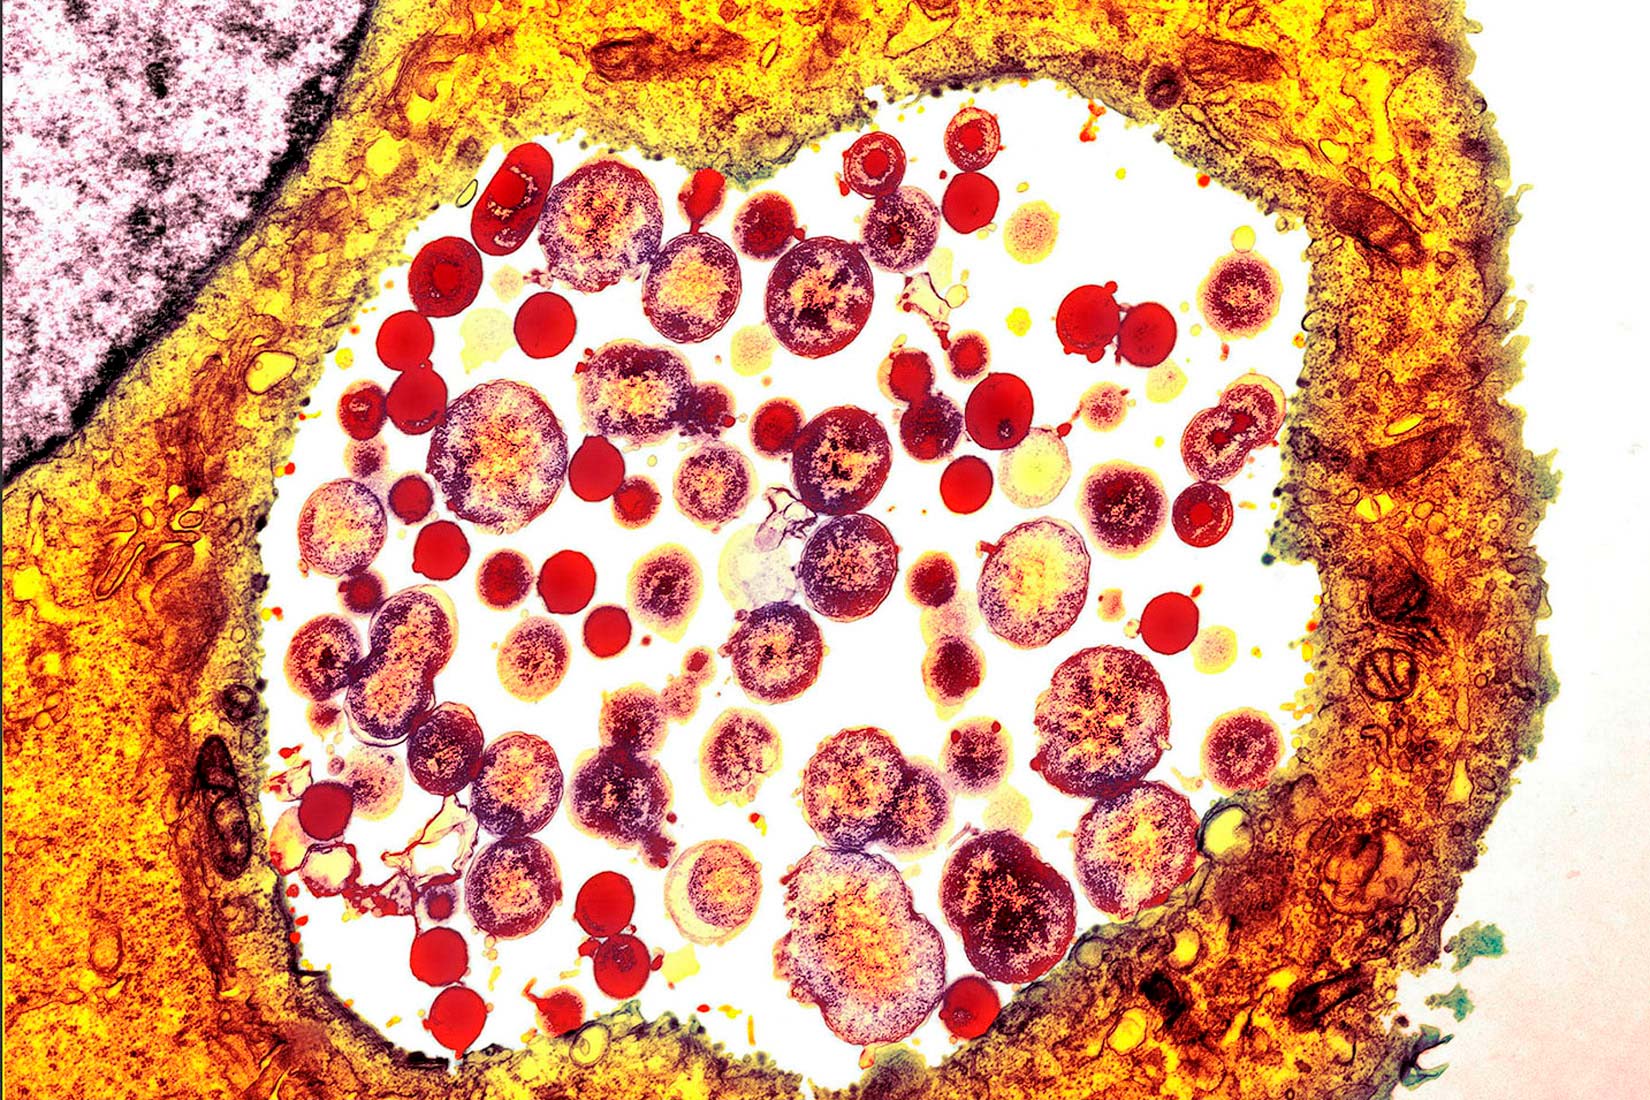 Na slici je prikazan mikroskopski prikaz stanice klamidije. Stjenka je žuta, a unutar nje se nalaze smeđo-žute točke nepravilnog oblika.